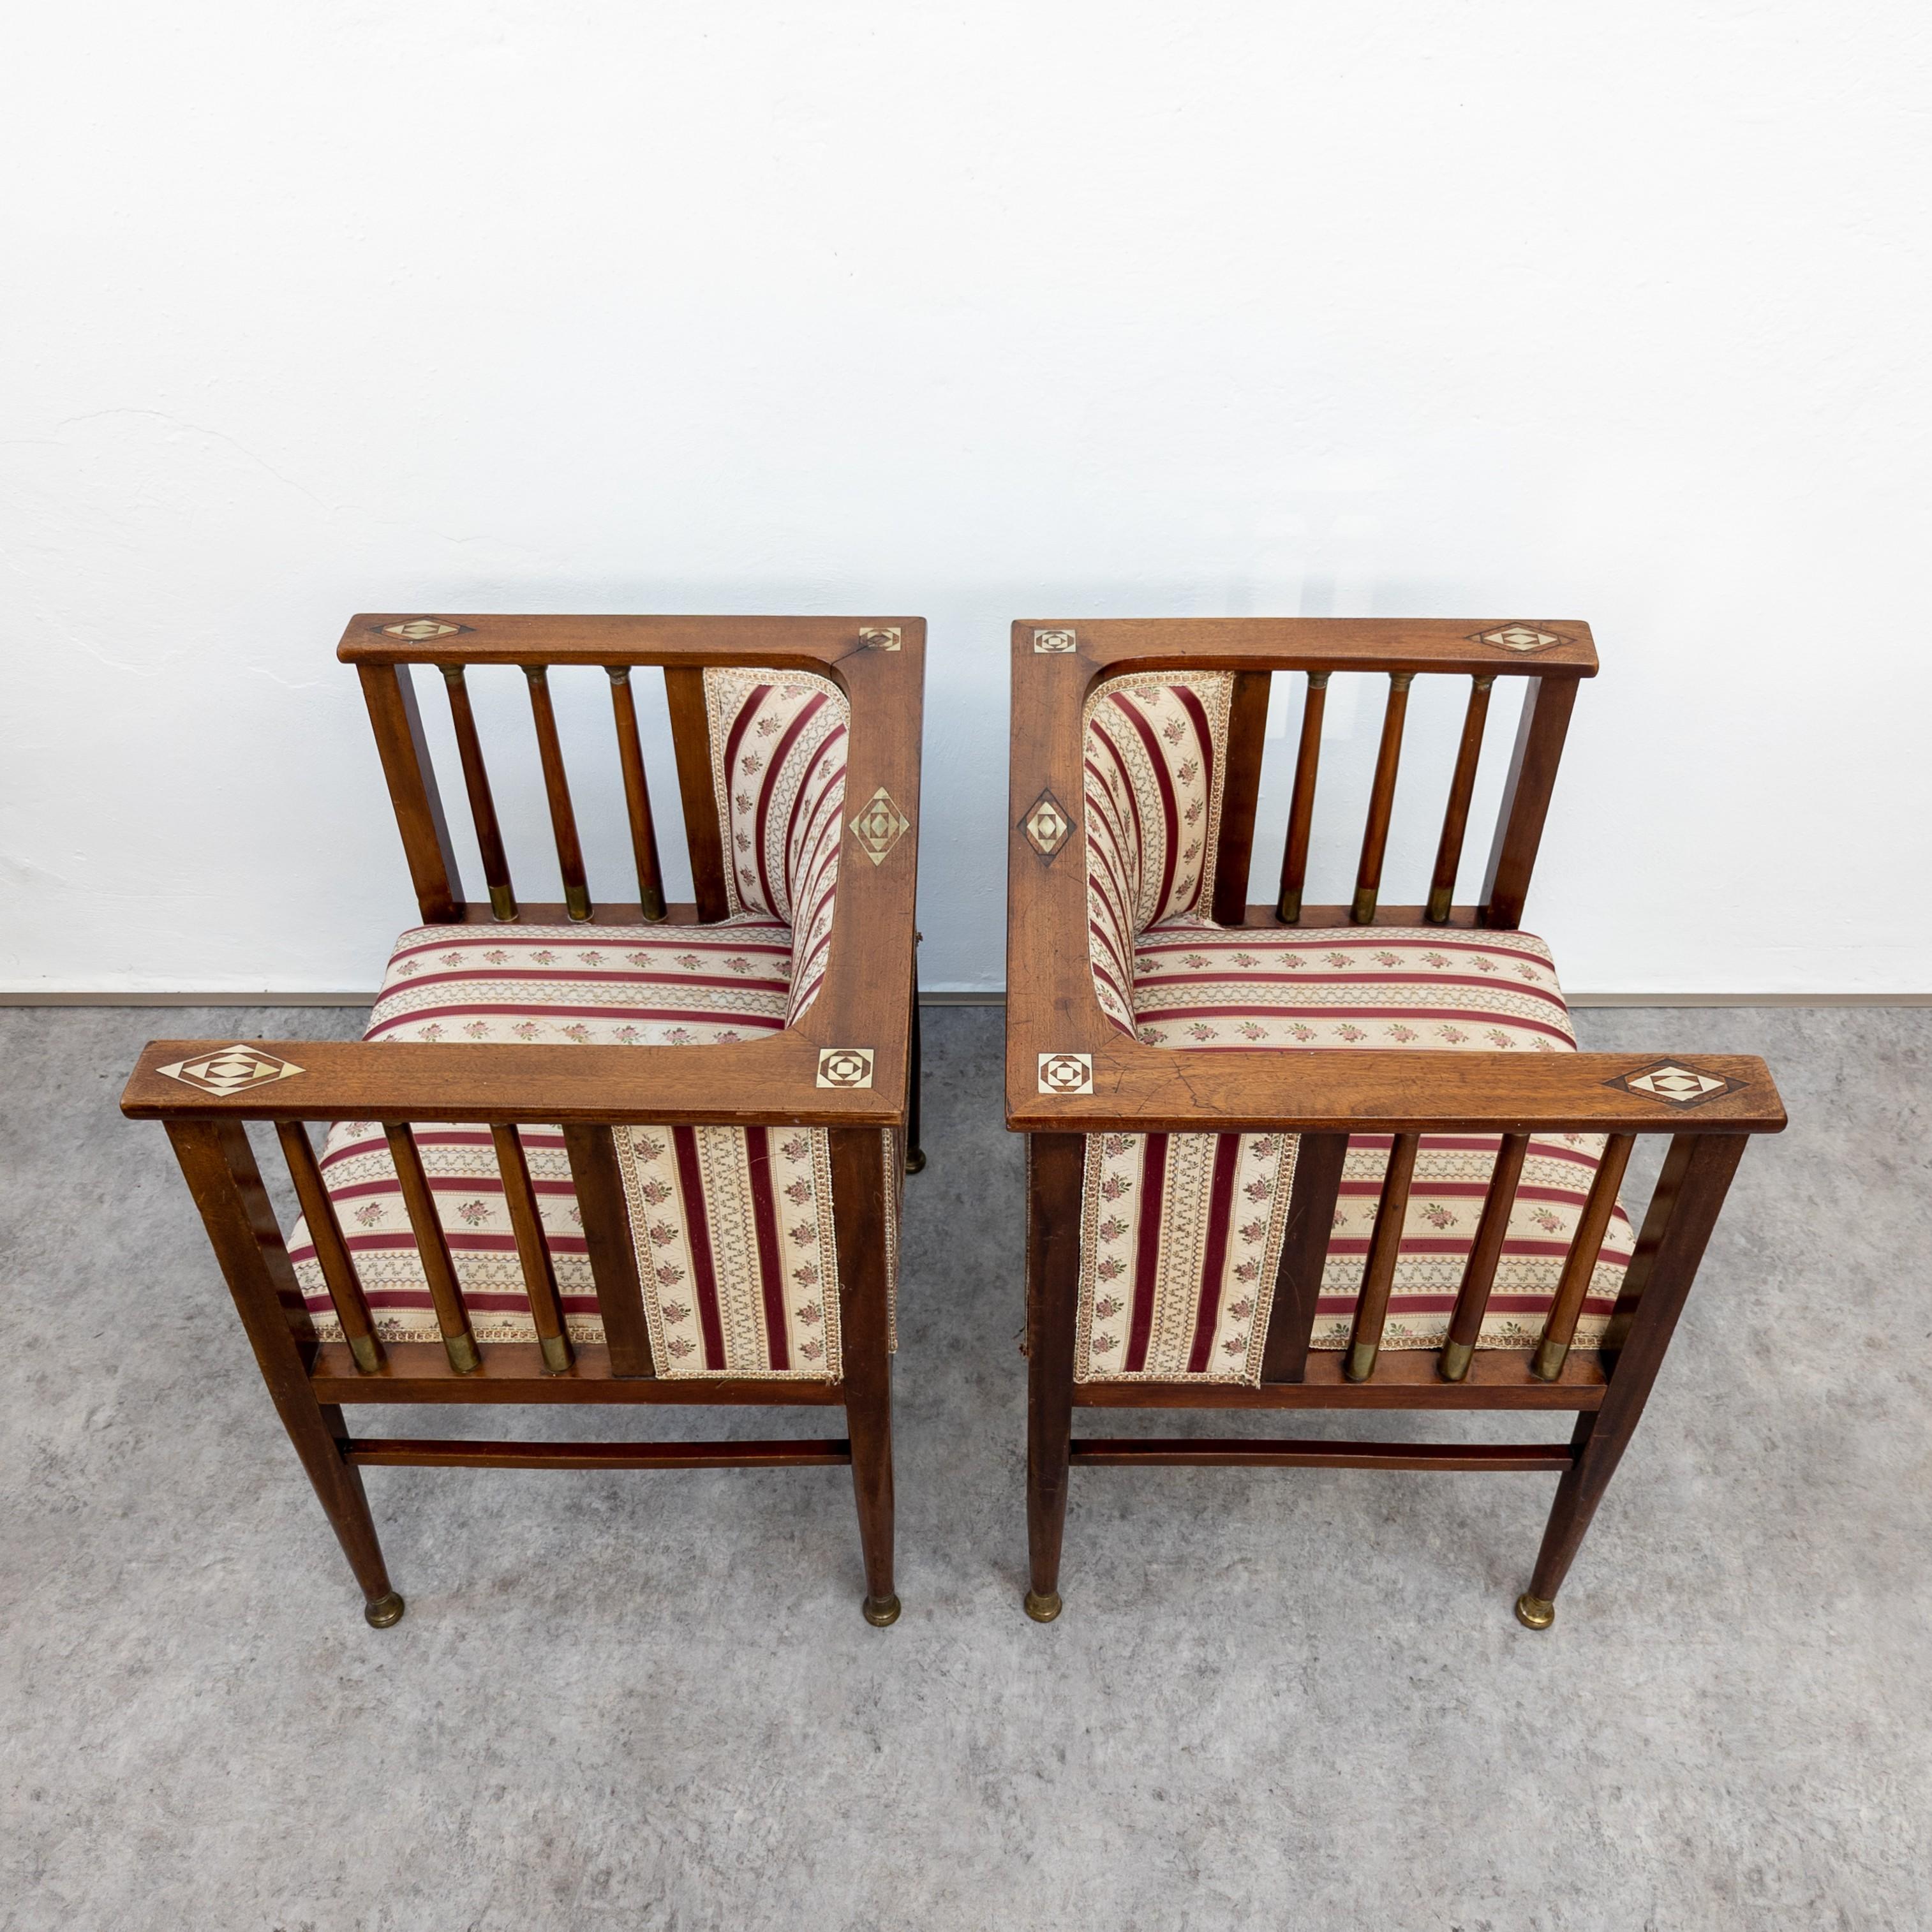 Très rares fauteuils de salon dessinés par l'artiste allemand Hans Christiansen (1866-1945) vers les années 1910. Fabriqué probablement par Ludwig Schäfer, Mayence. Fabriqué en acajou massif et placage d'acajou avec incrustations en métal et